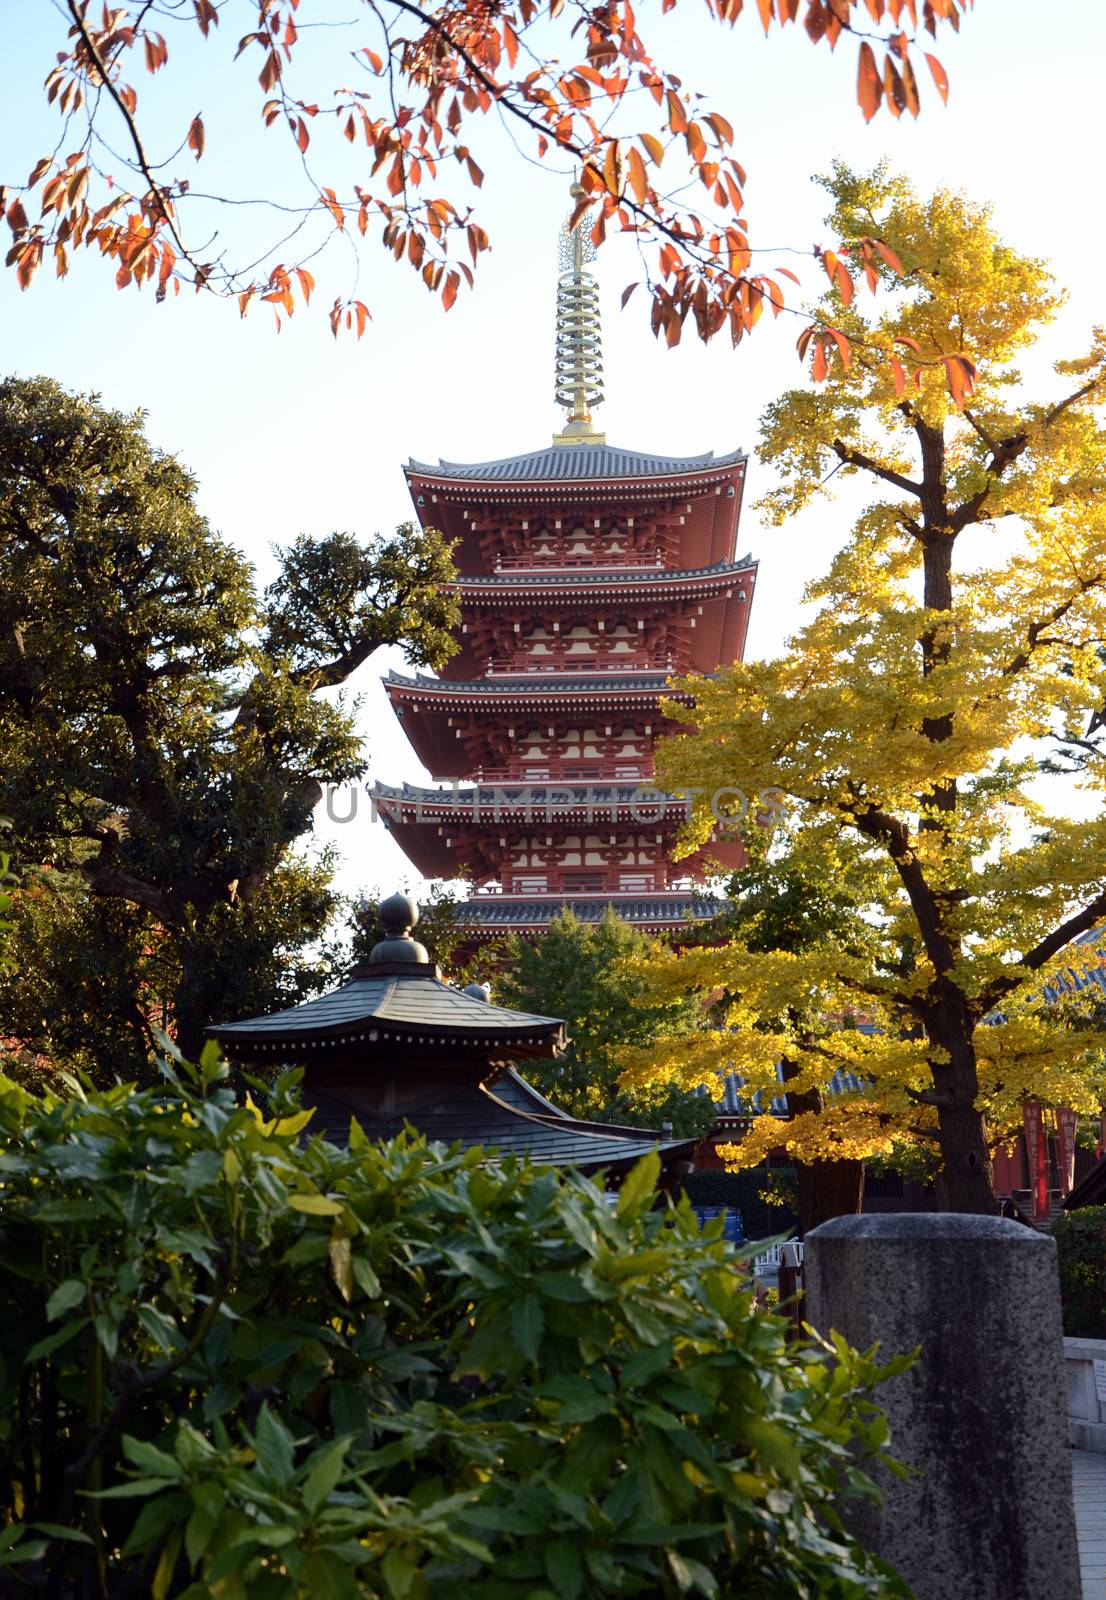 Pagoda of Senso-ji temple in Asakusa, Tokyo, Japan by siraanamwong